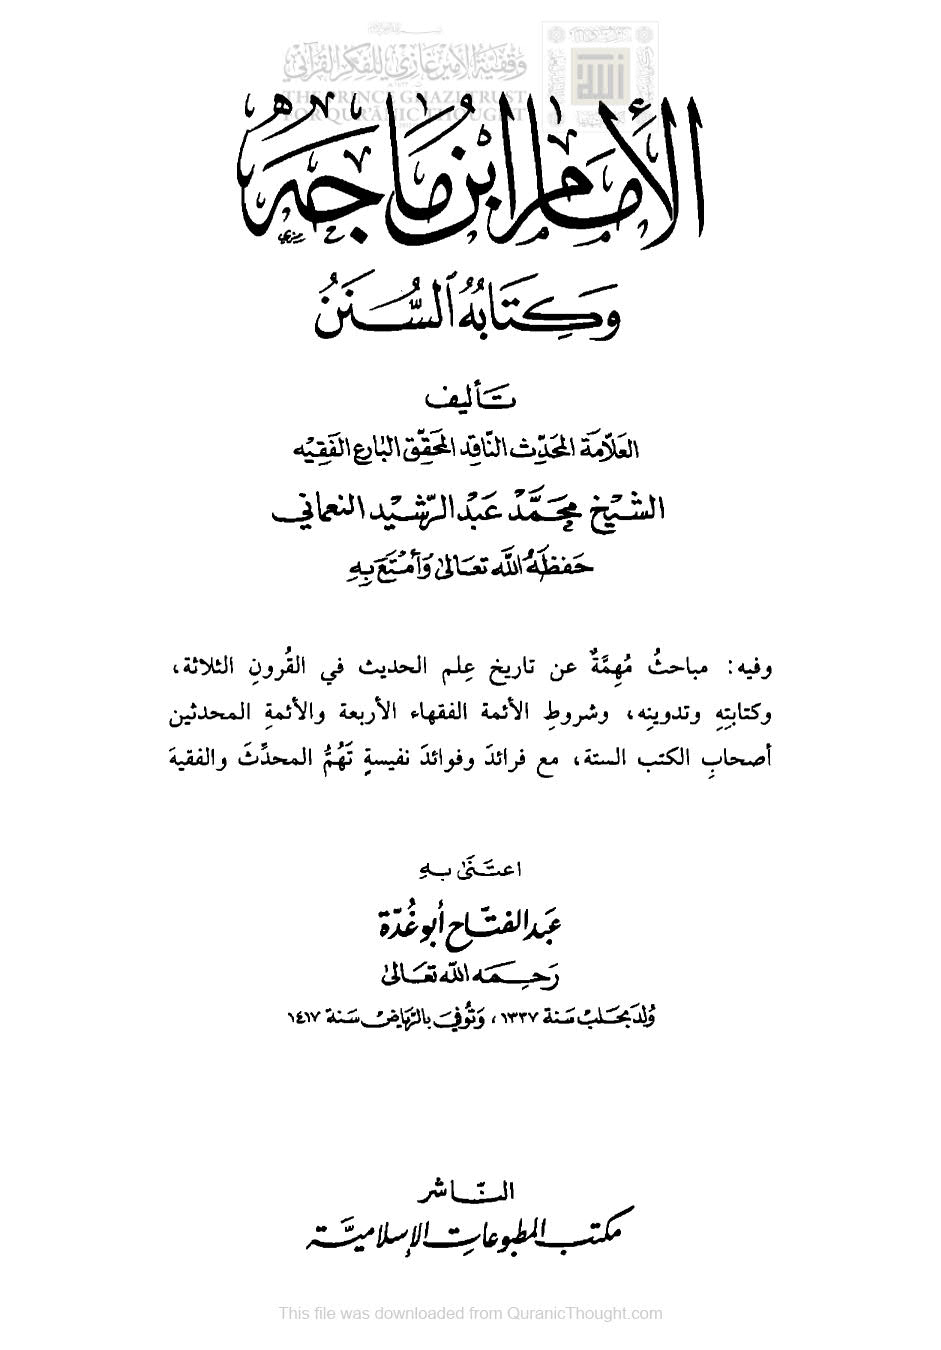 الإمام ابن ماجه وكتابه السنن ( ط _ مكتبة المطبوعات الإسلامية / الطبعة السادسة _ 1419هـ )